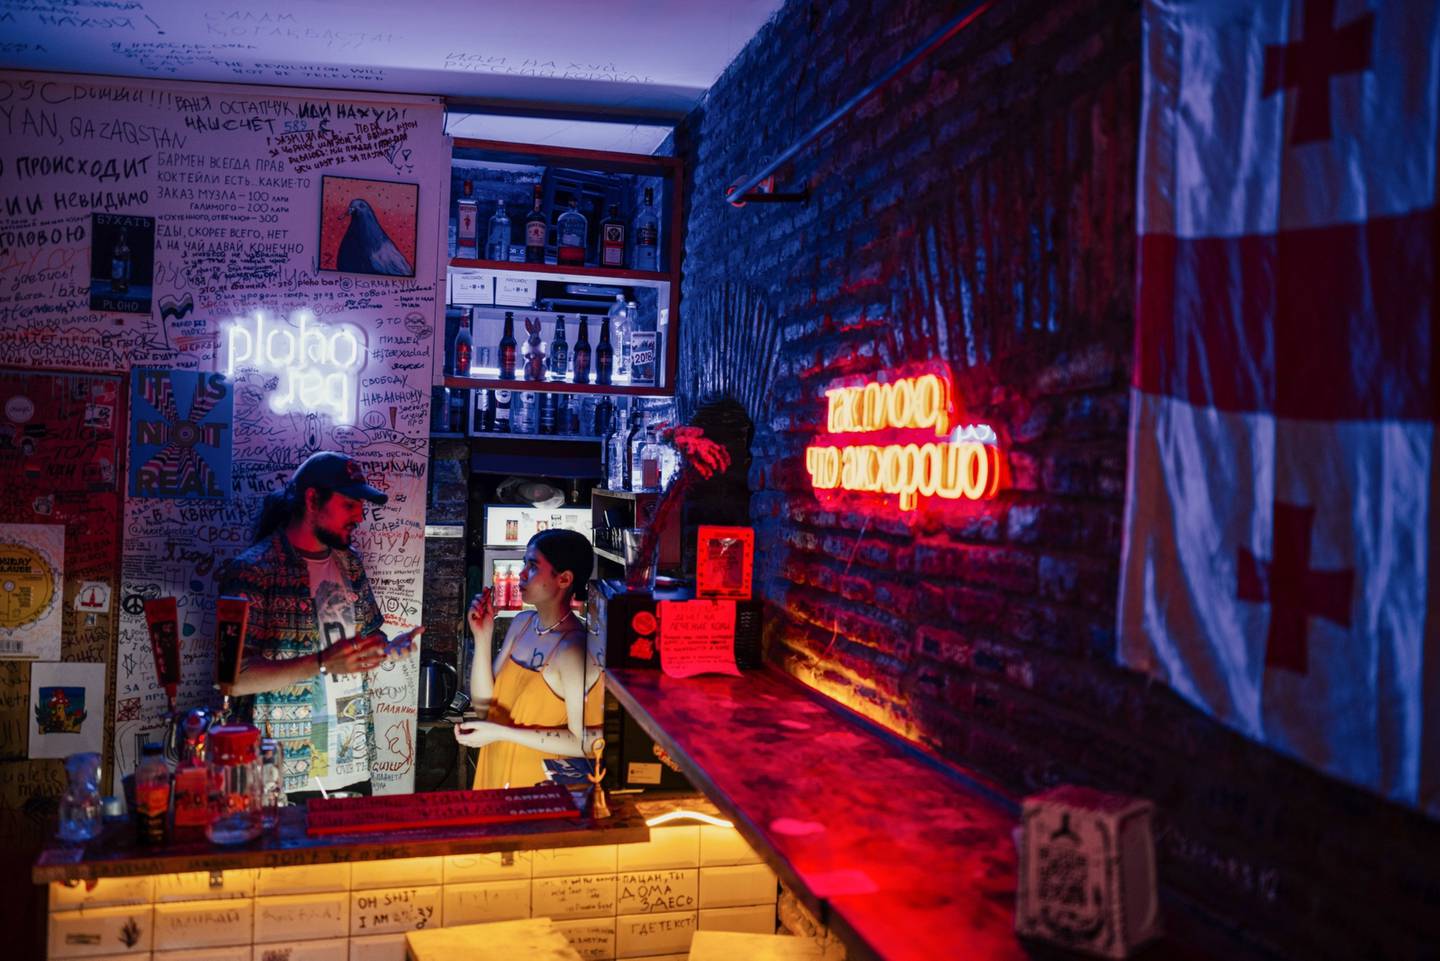 La copropietaria Dariya Zheniskhan con un camarero en su bar, Ploho, en Tiflis (Georgia), donde las paredes están adornadas con grafitis contra Putin. Fotógrafo: Tako Robakidze/Bloombergdfd